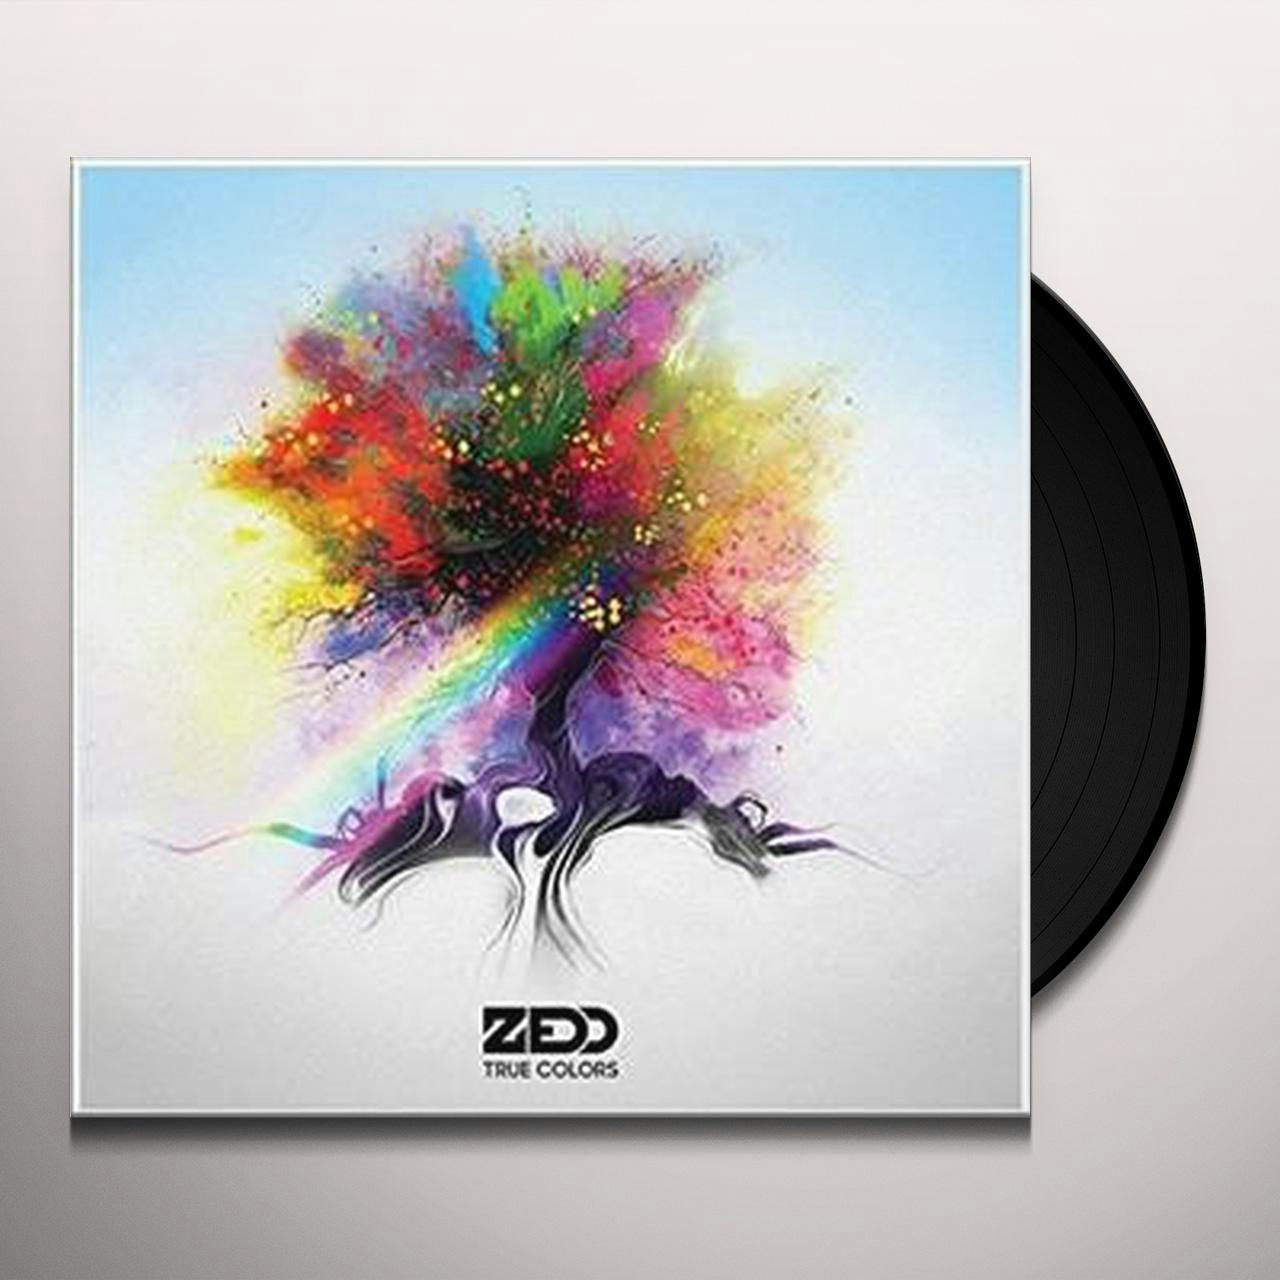 True Colors Vinyl Record - Zedd